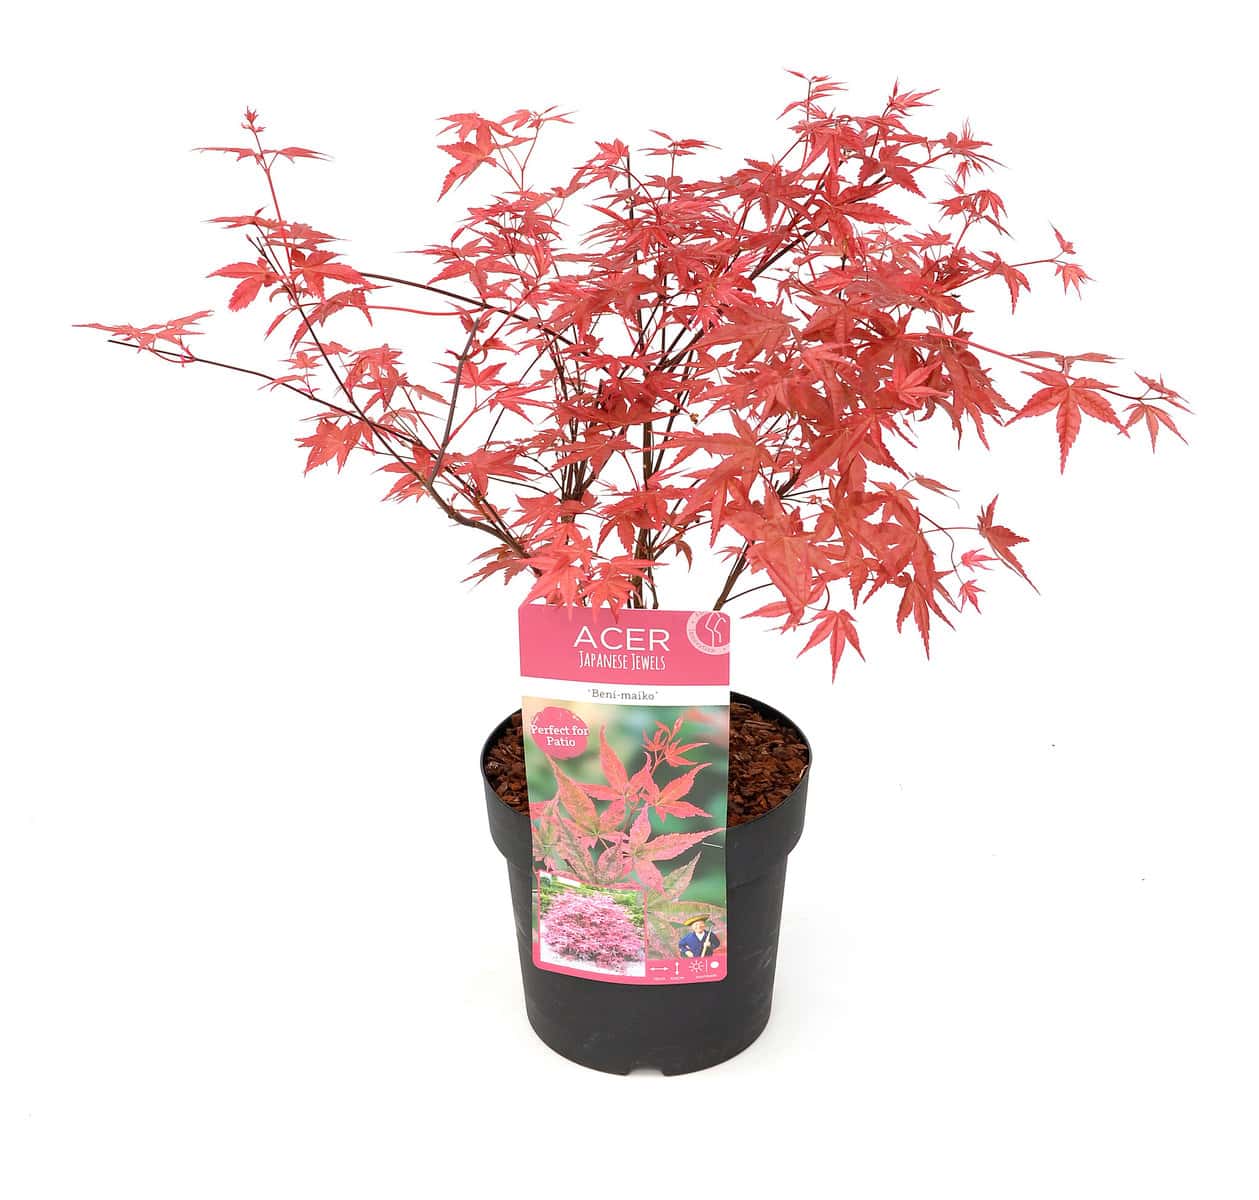 Acer palmatum´Beni Maiko´ - Japanse Esdoorn - Pot 19cm - Hoogte 60-70cm bezorgen via Florastore